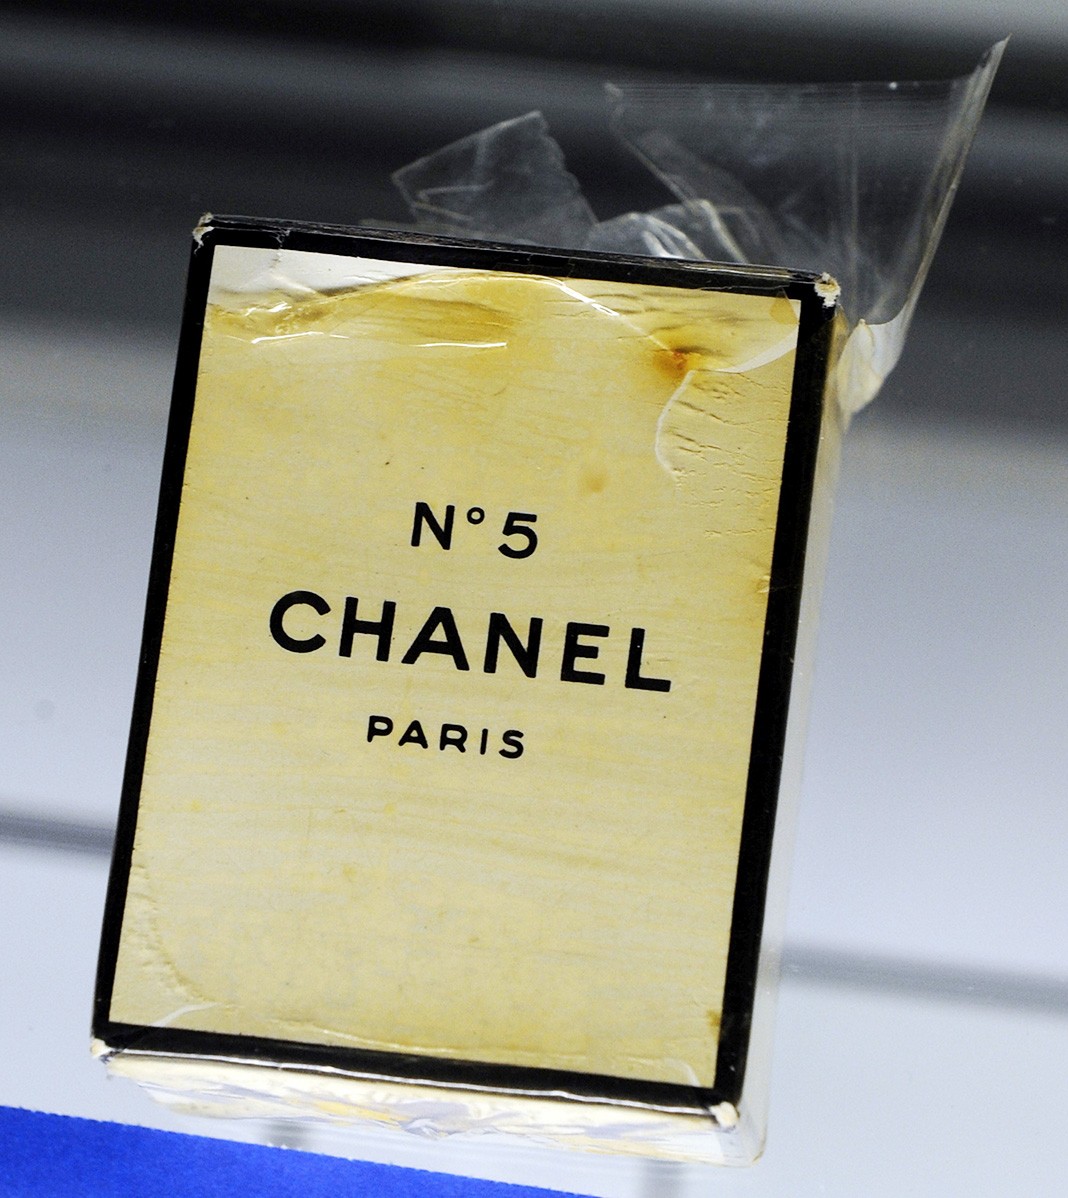 Неоткрытый флакон духов Chanel №5 в оригинальной пластиковой упаковке, принадлежащий Мэрилин Монро, выставлен на ежегодной летней распродаже Julien's Auctions в Лас-Вегасе, 24 июня 2010 г.